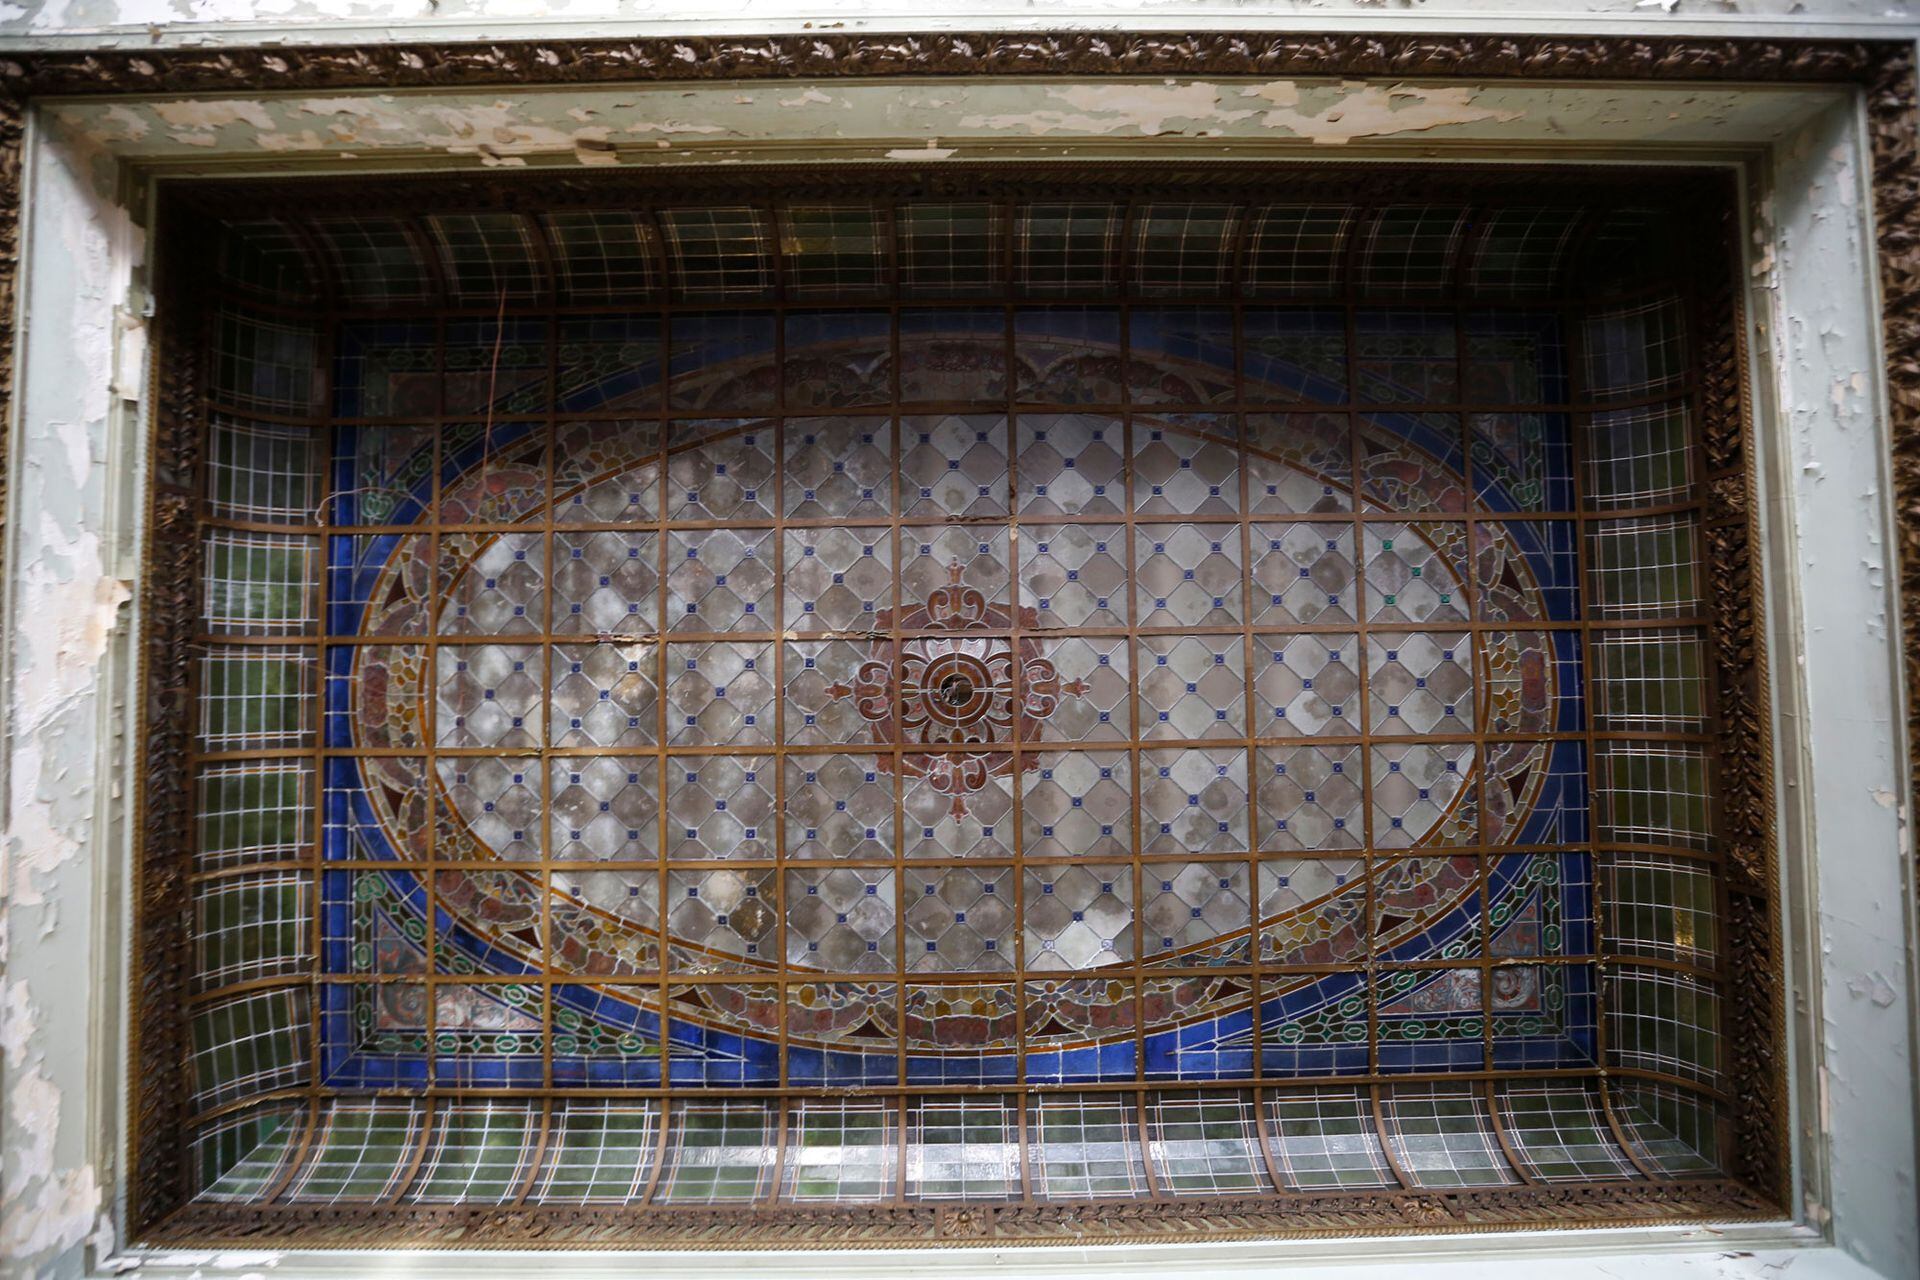 En el lugar utilizado para fiestas se destaca además un vitral en el techo, azul y marrón cobrizo, característico de la época